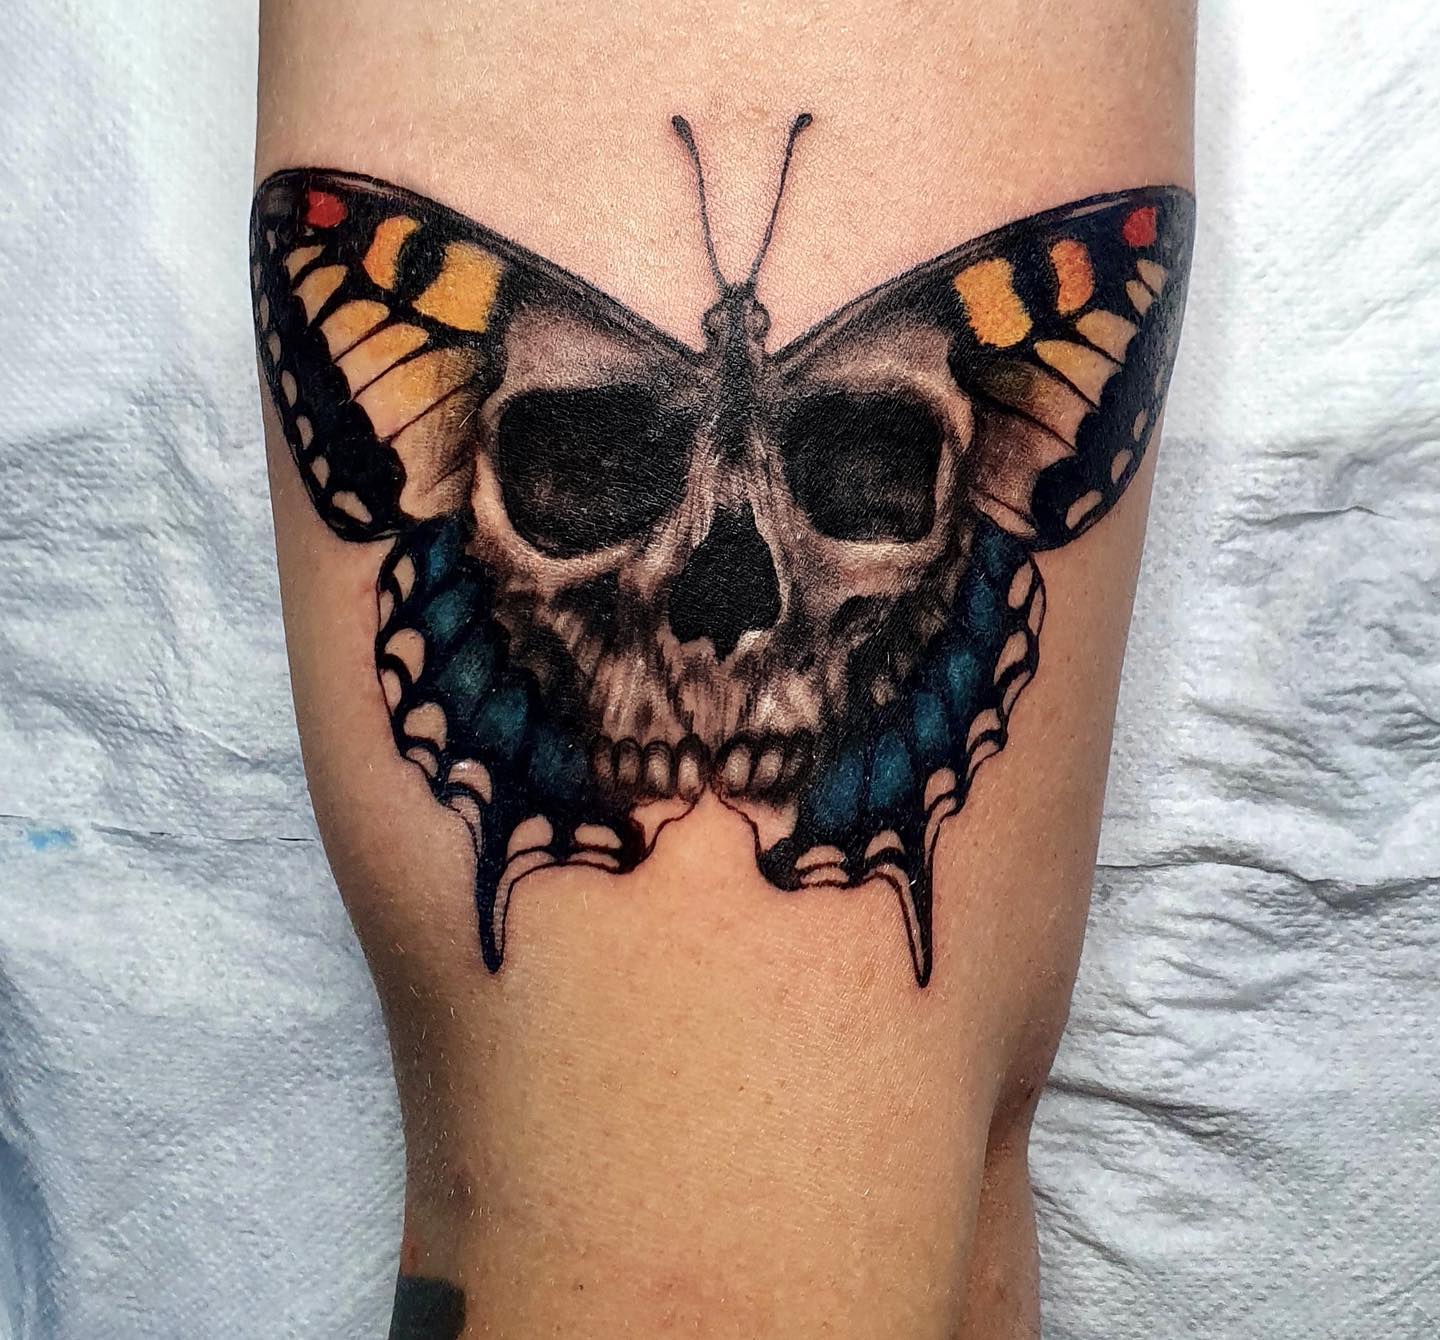 Butterfly skull tattoo  FashionBuzzercom